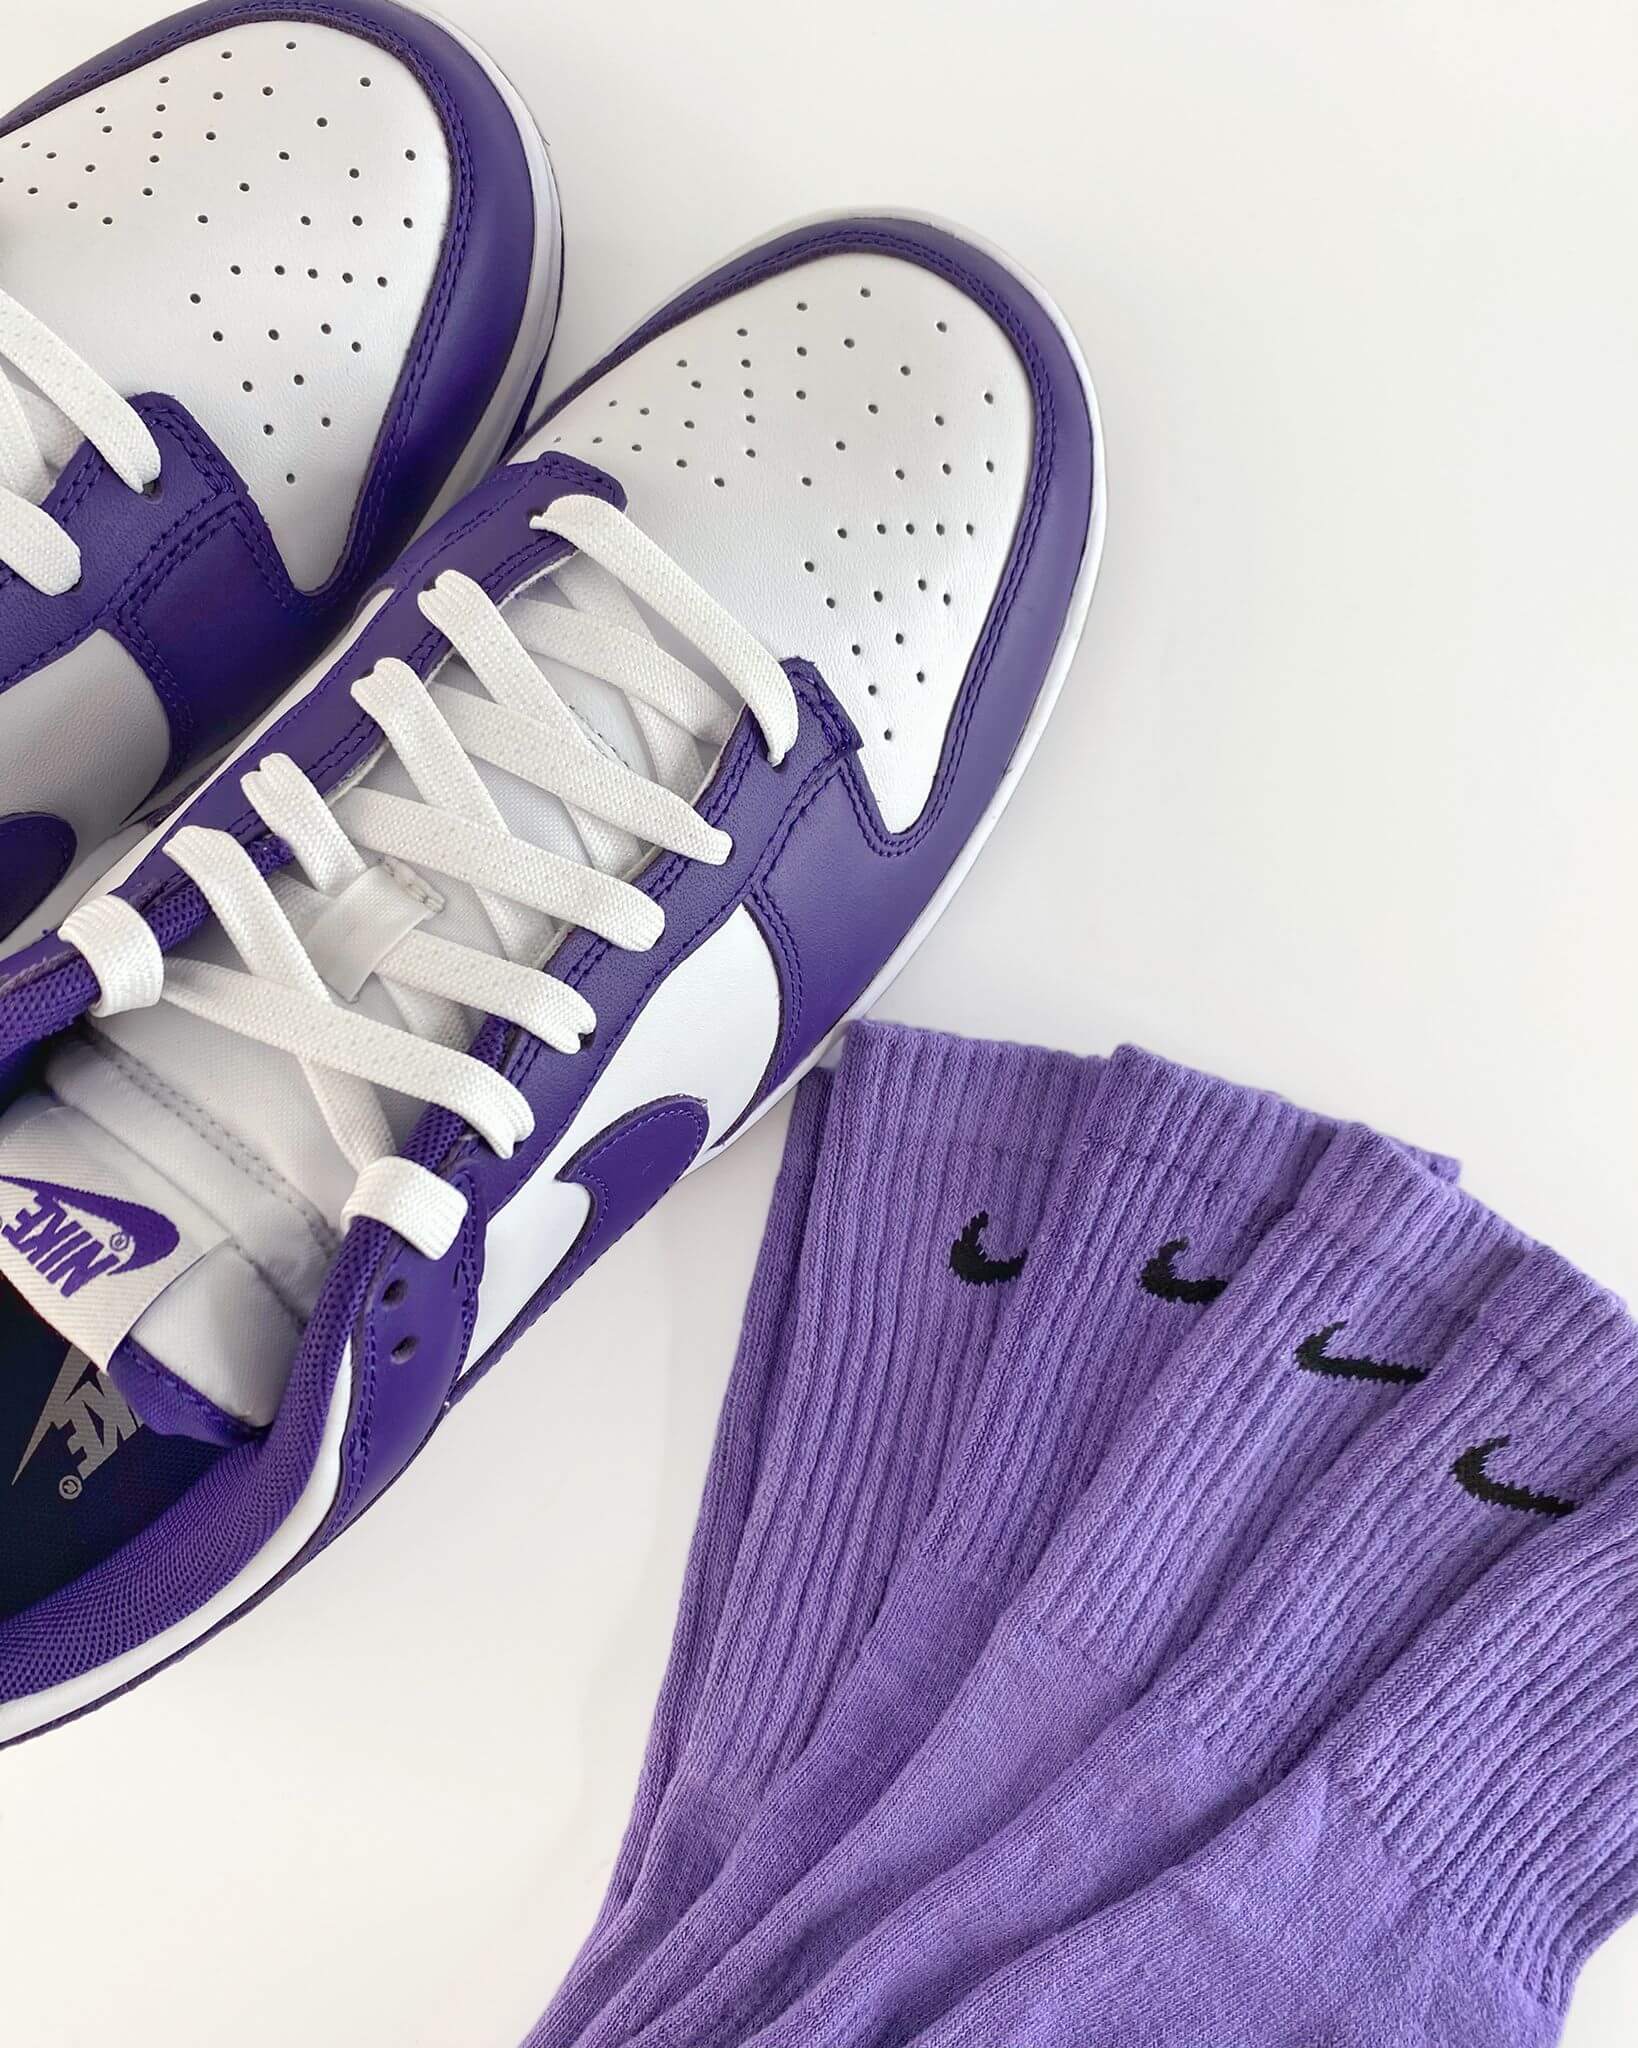 Purple custom socks